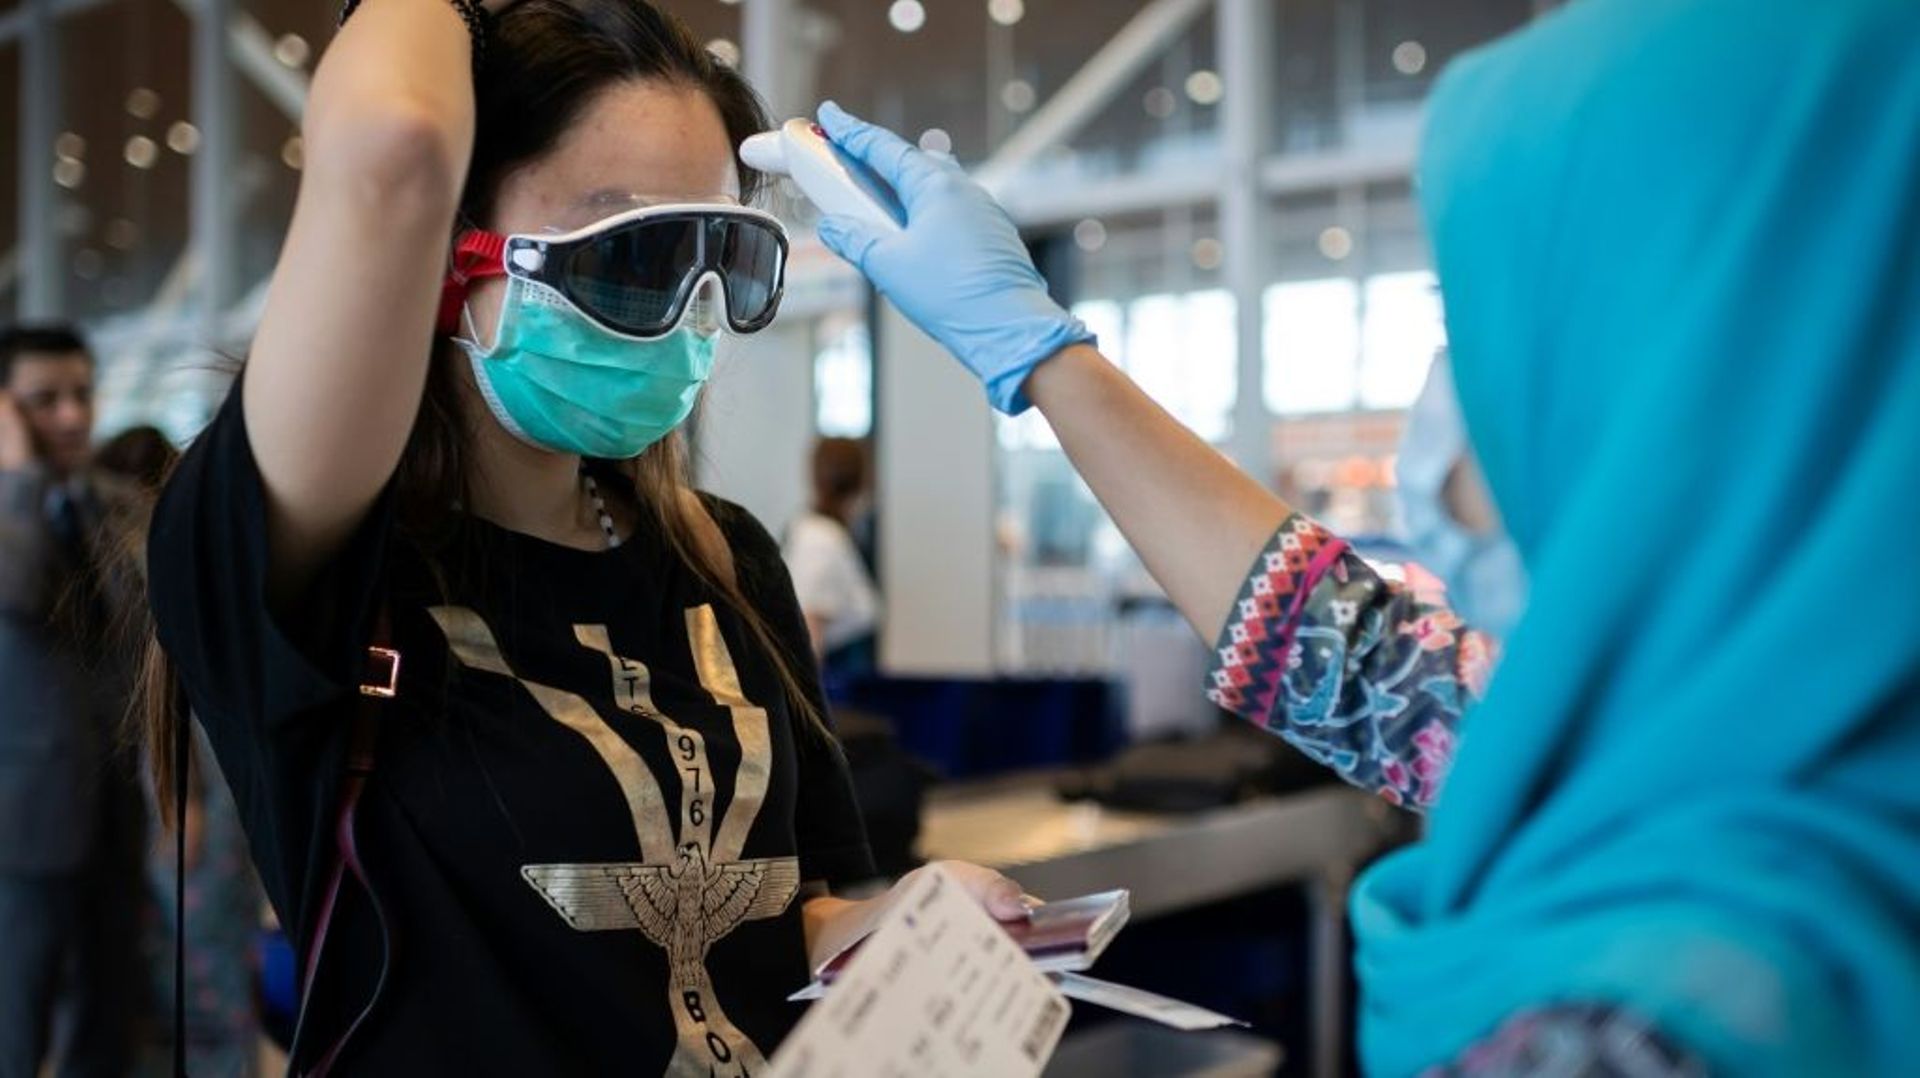 Une hôtesse de l'air de Malaysia Airlines prend la température d'une passagère chinoise à l'embarquement d'un vol pour Pékin, le 14 février 2020 à l'aéroport de Kuala Lumpur